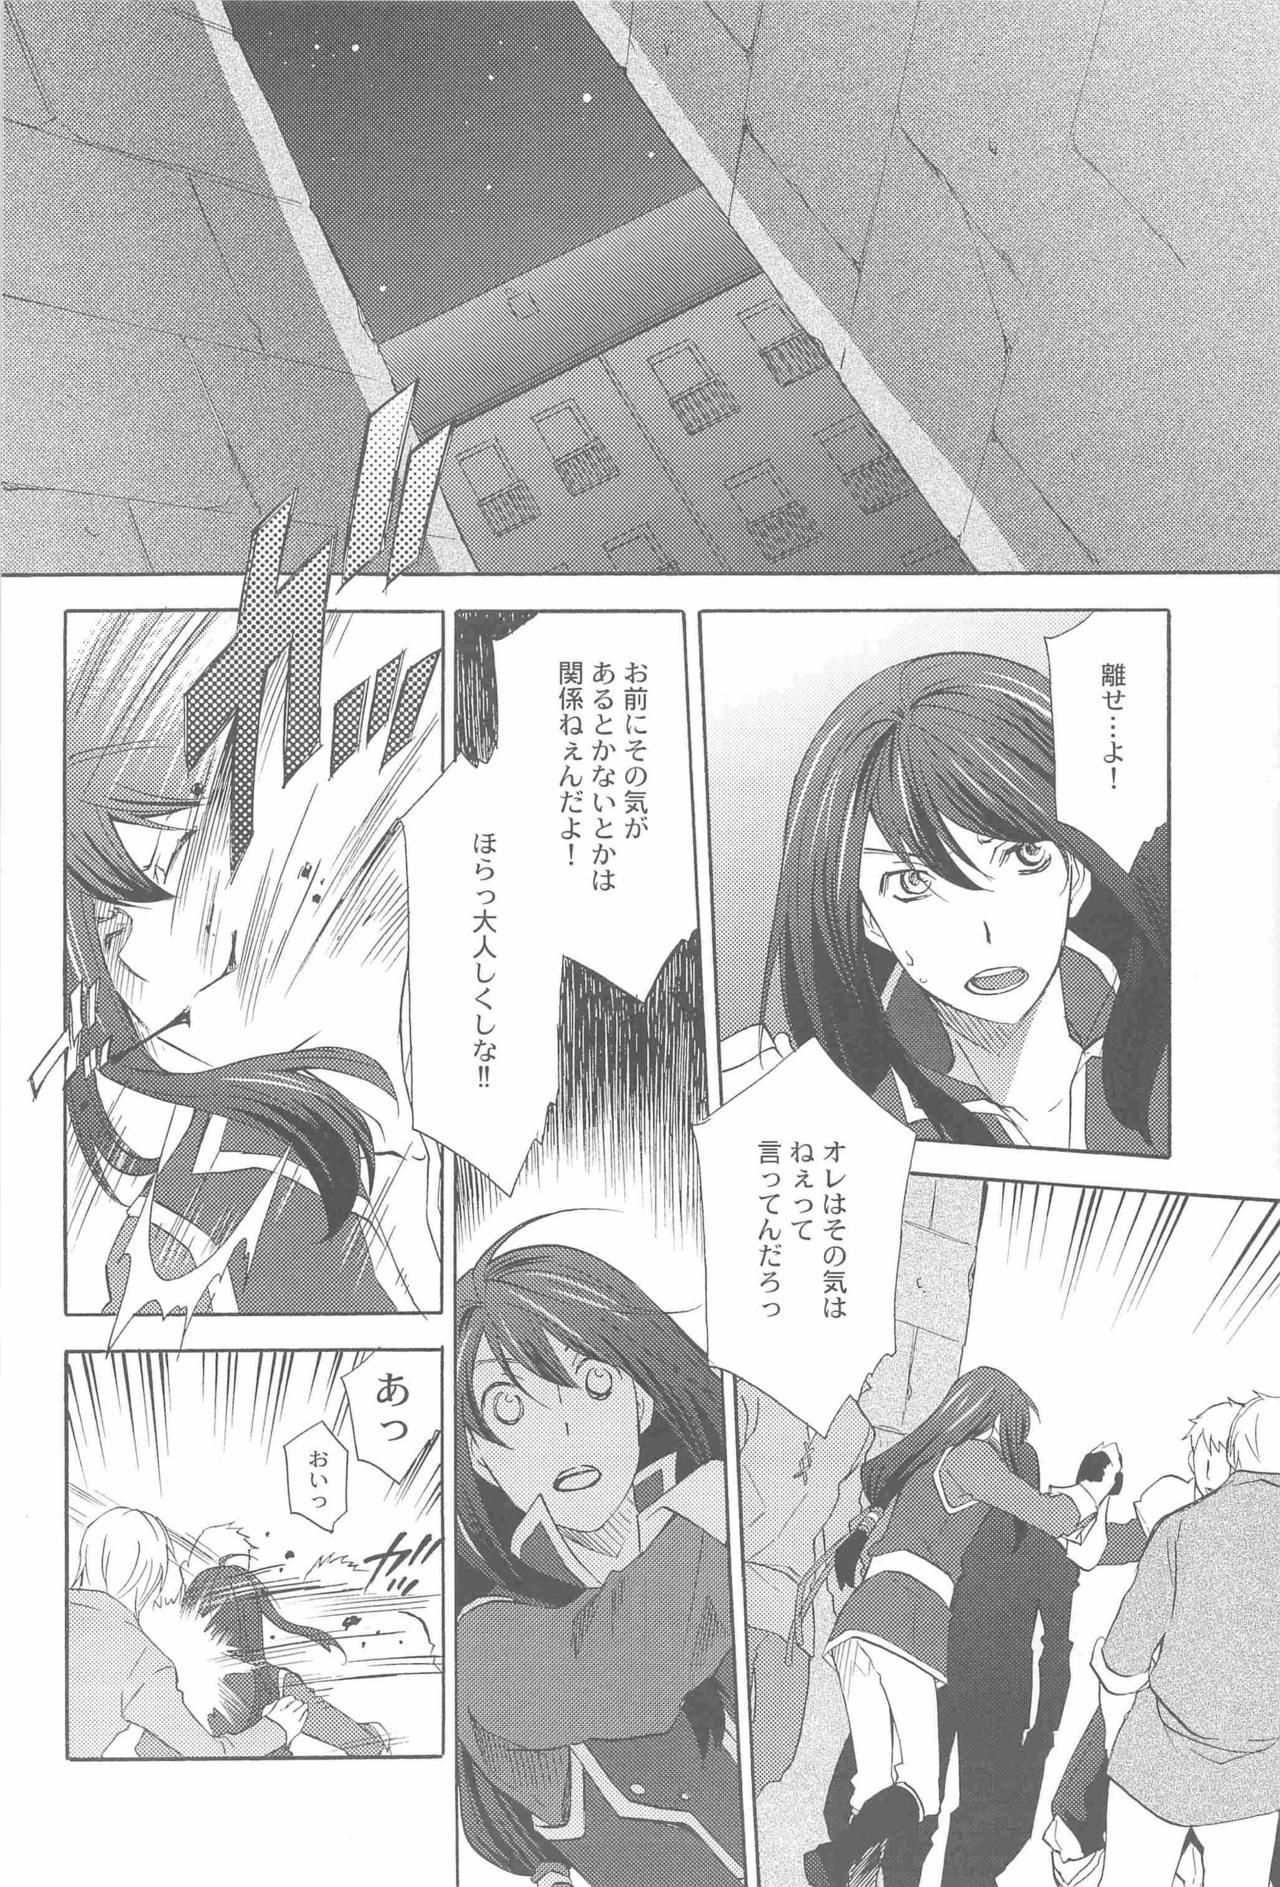 Hot Blow Jobs Teikoku no Inu Naburi - Tales of vesperia Retro - Page 5